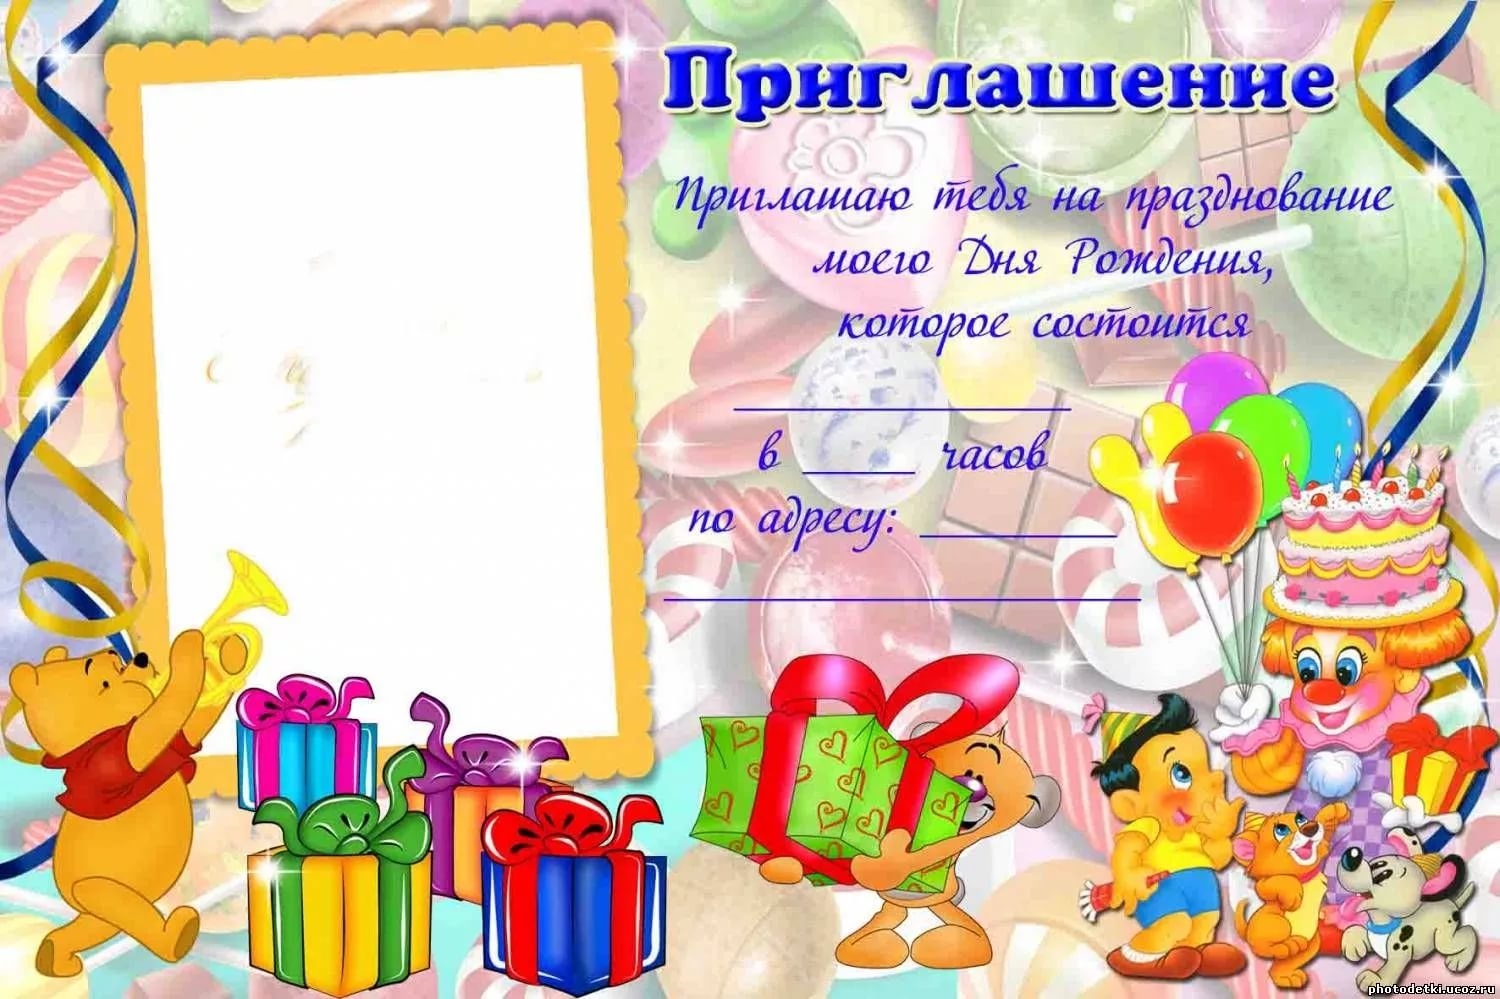 Приглашение на детский день рождения Изображения – скачать бесплатно на Freepik